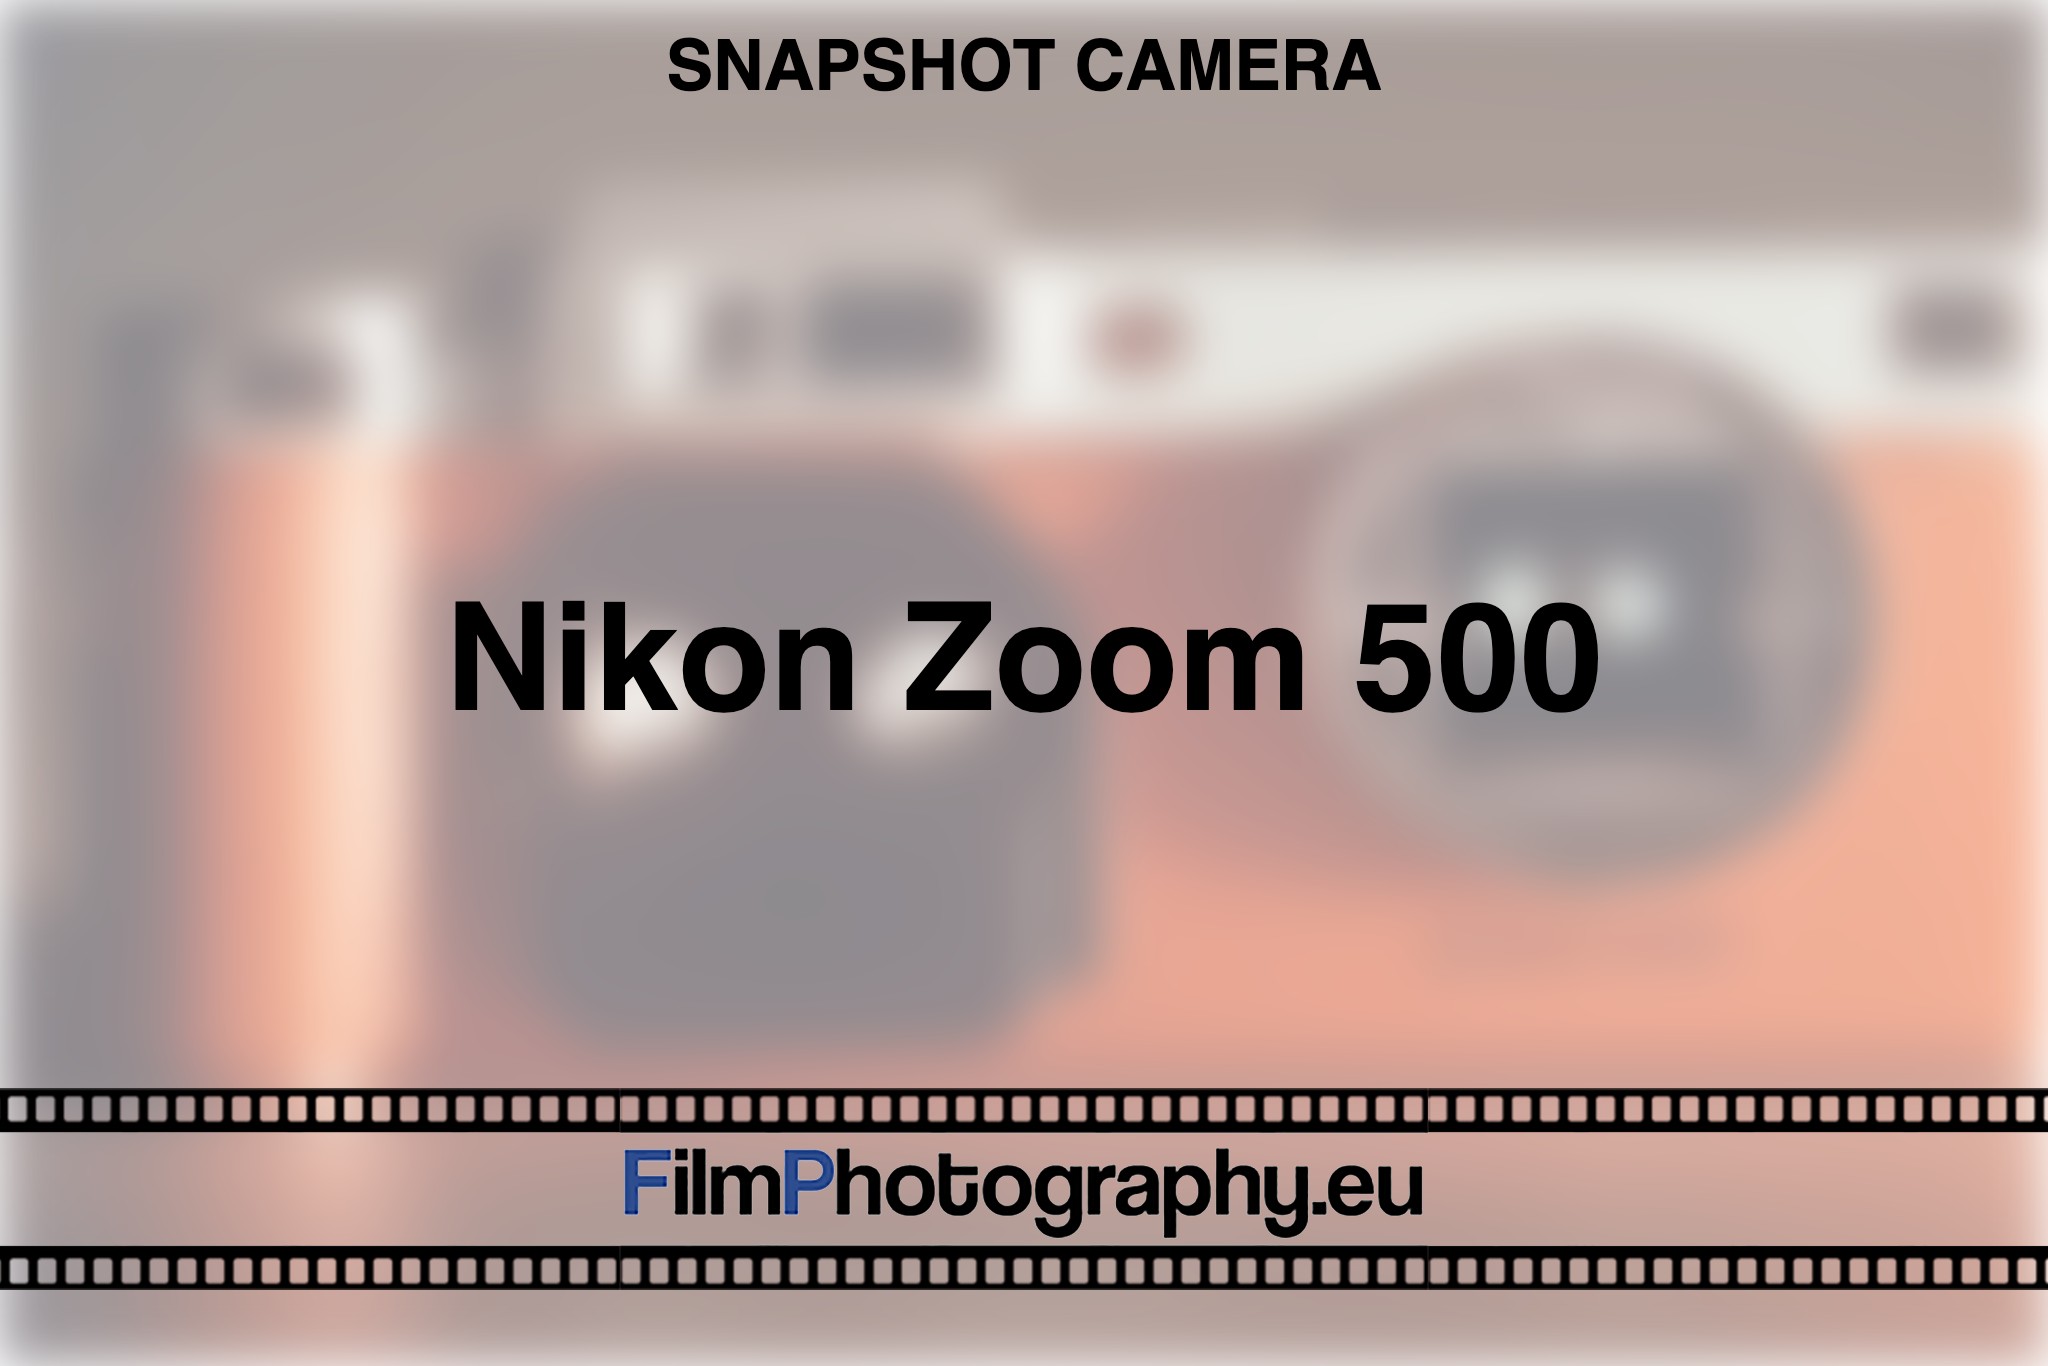 nikon-zoom-500-snapshot-camera-bnv